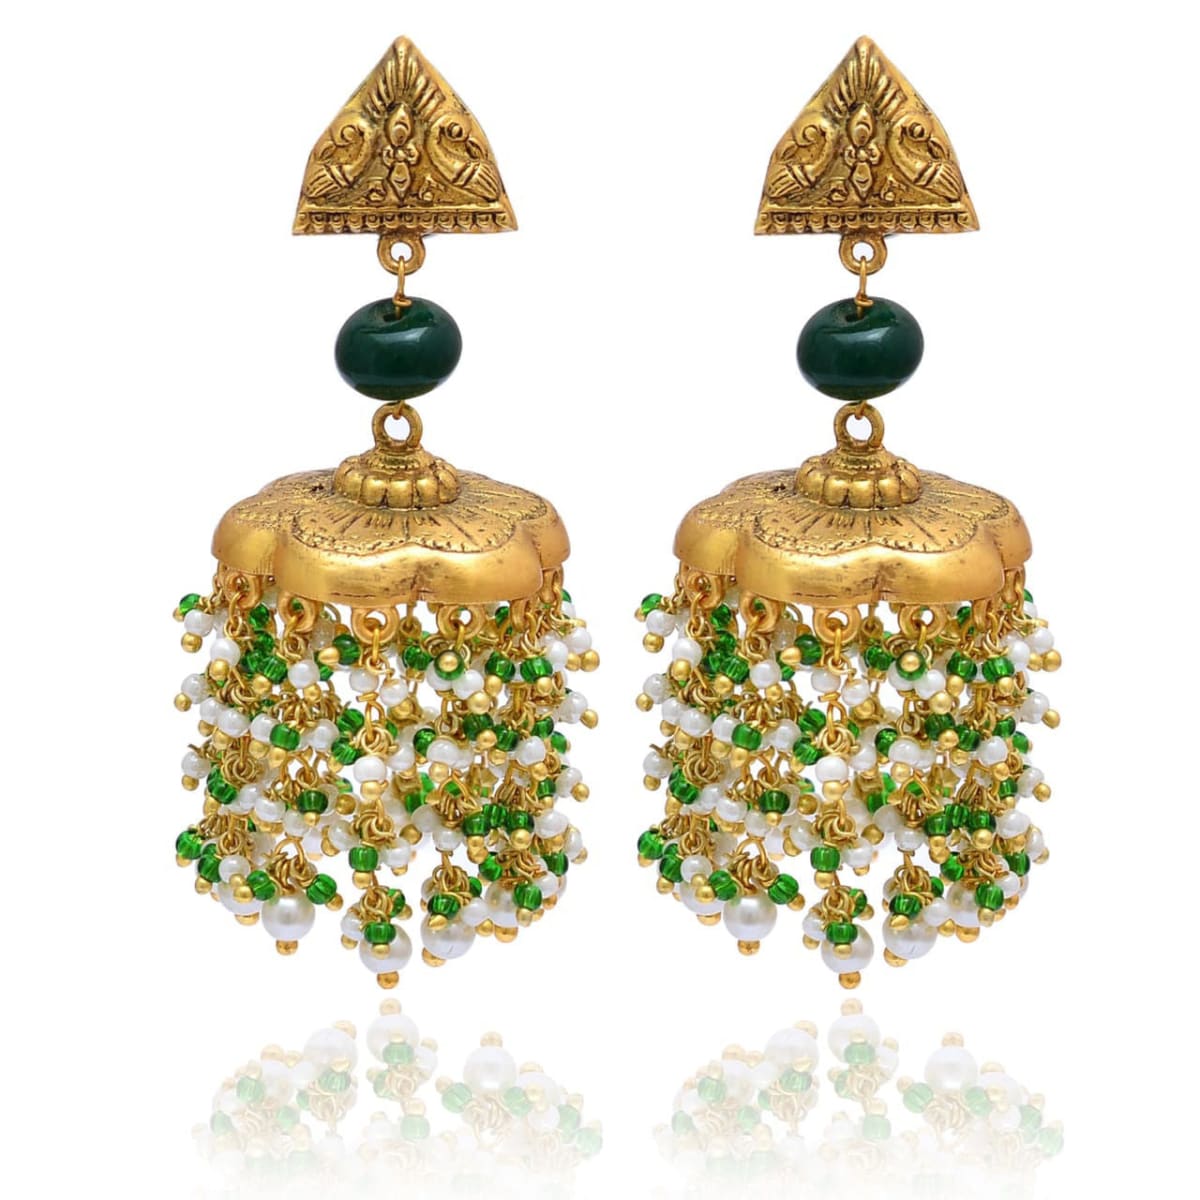 Share 156+ party wear jhumka earrings best